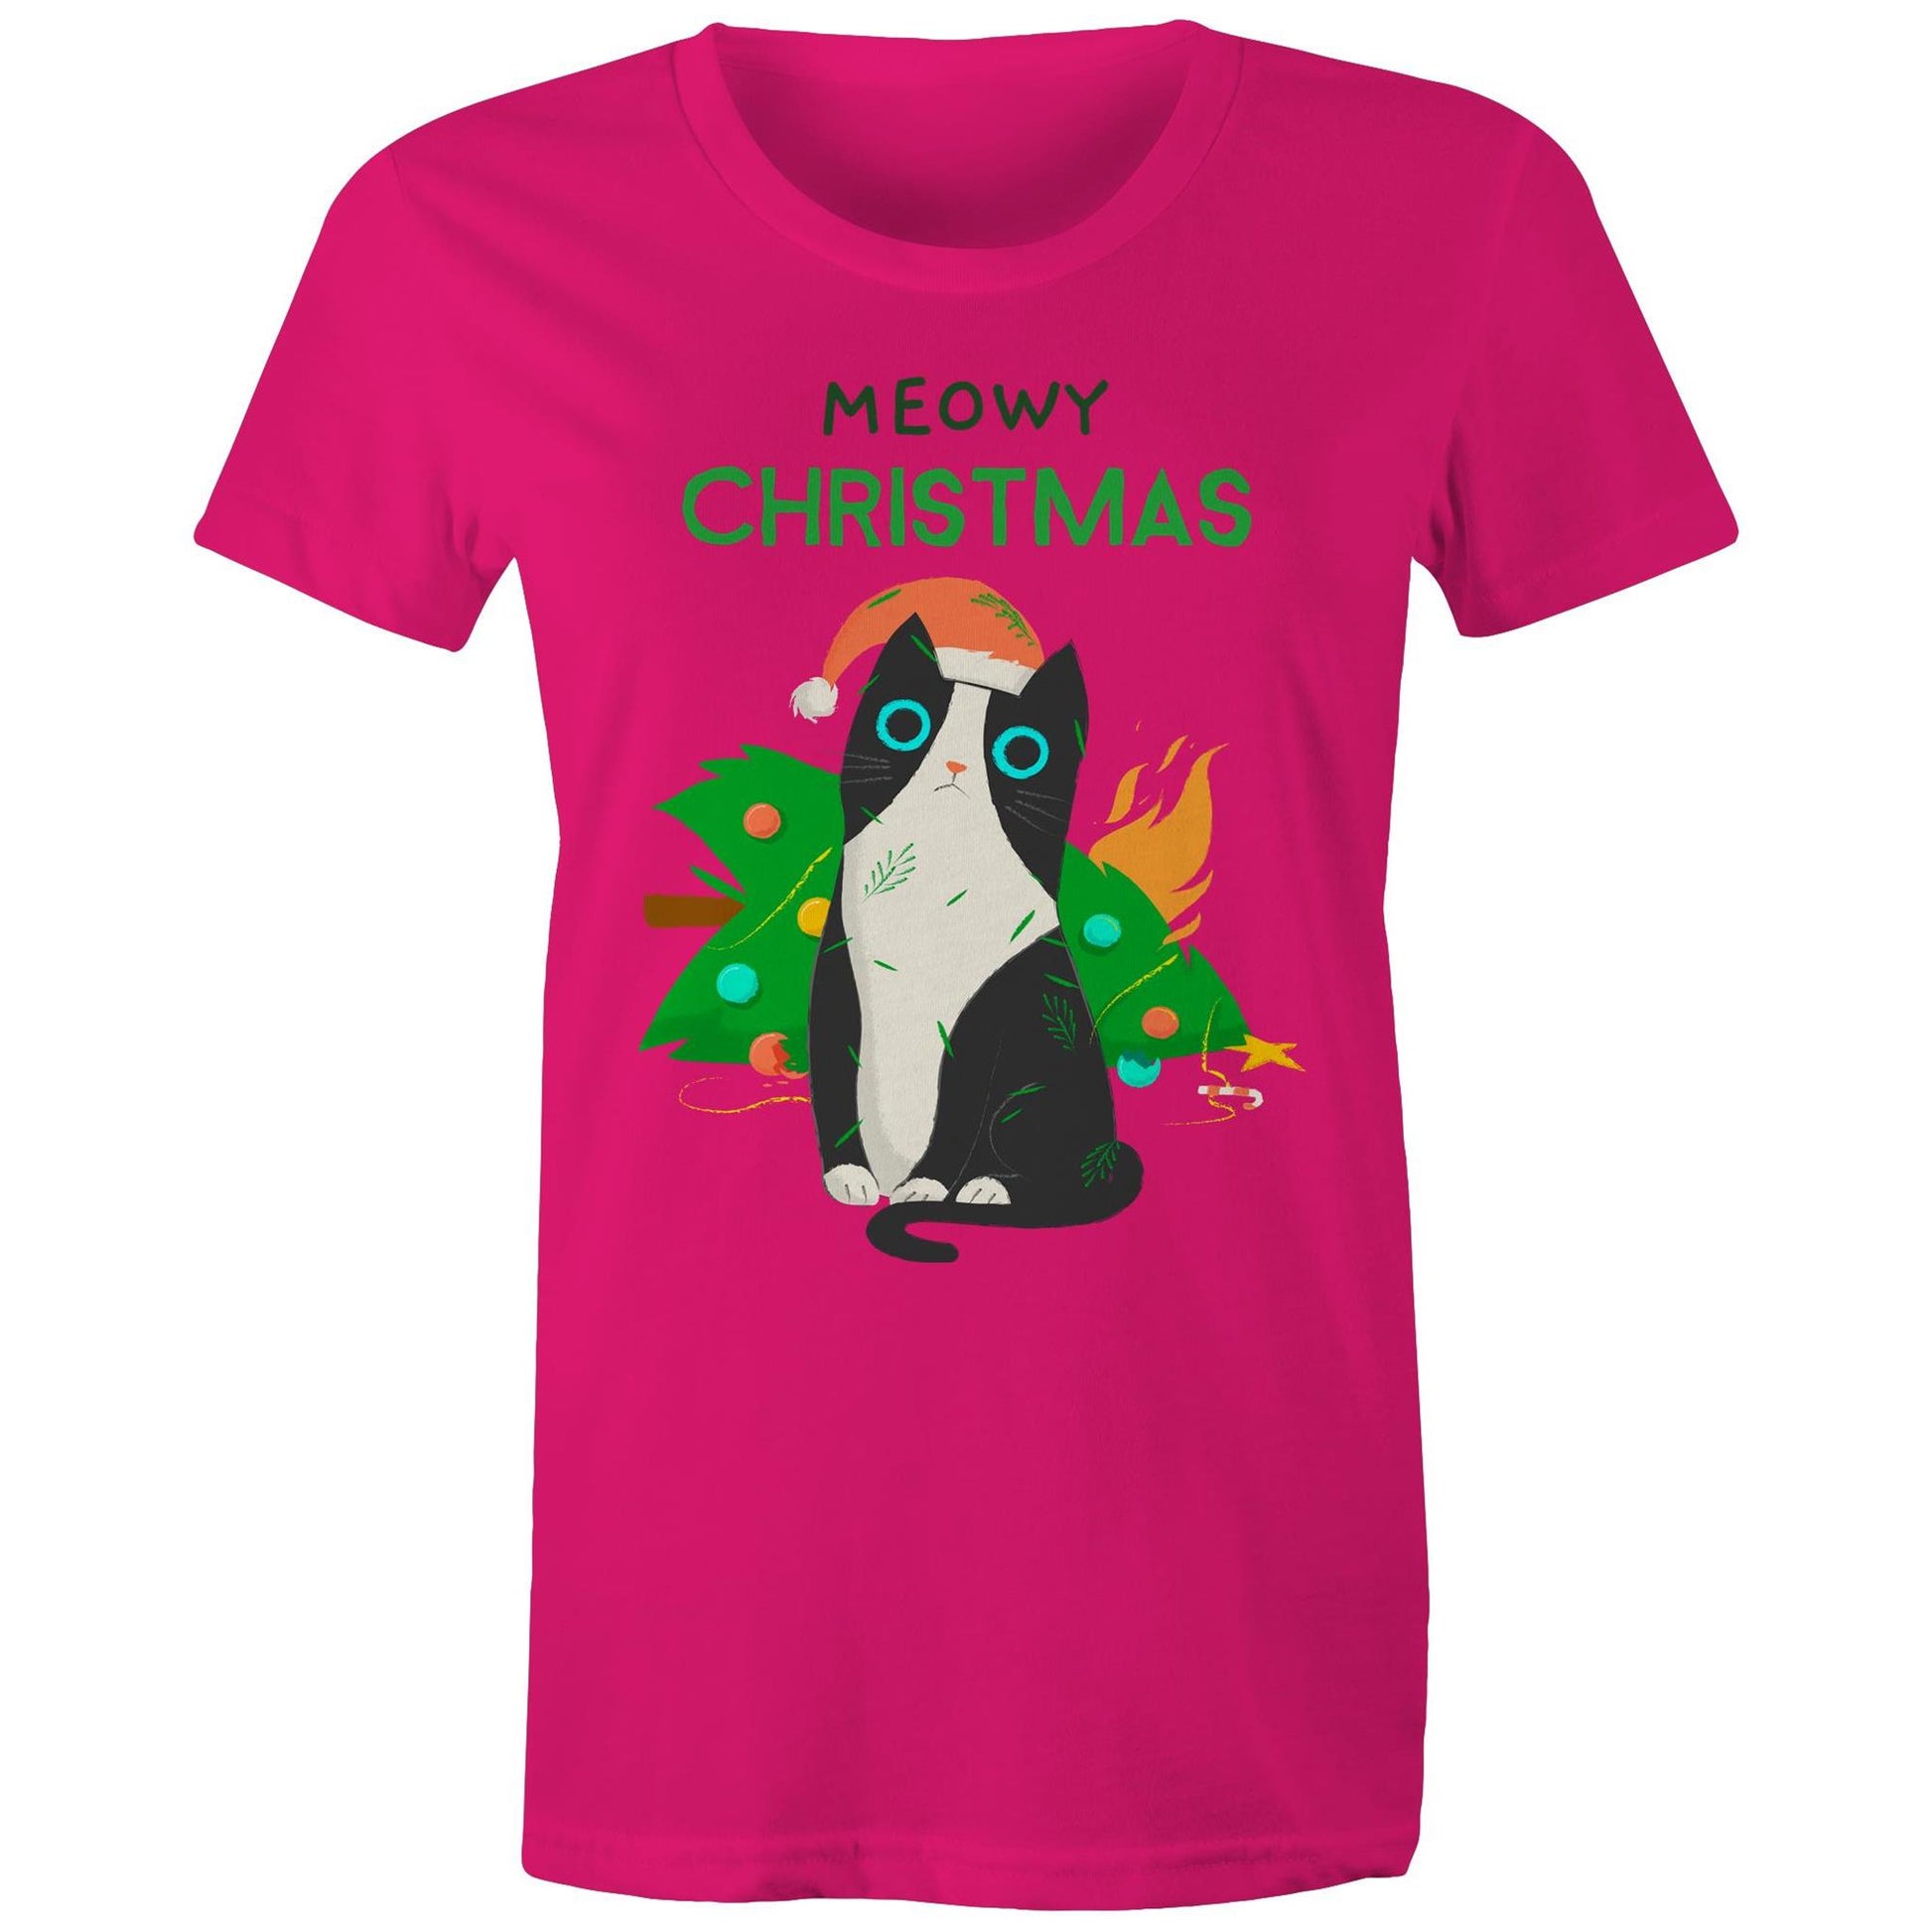 Meowy Christmas - Womens T-shirt Fuchsia Christmas Womens T-shirt Merry Christmas